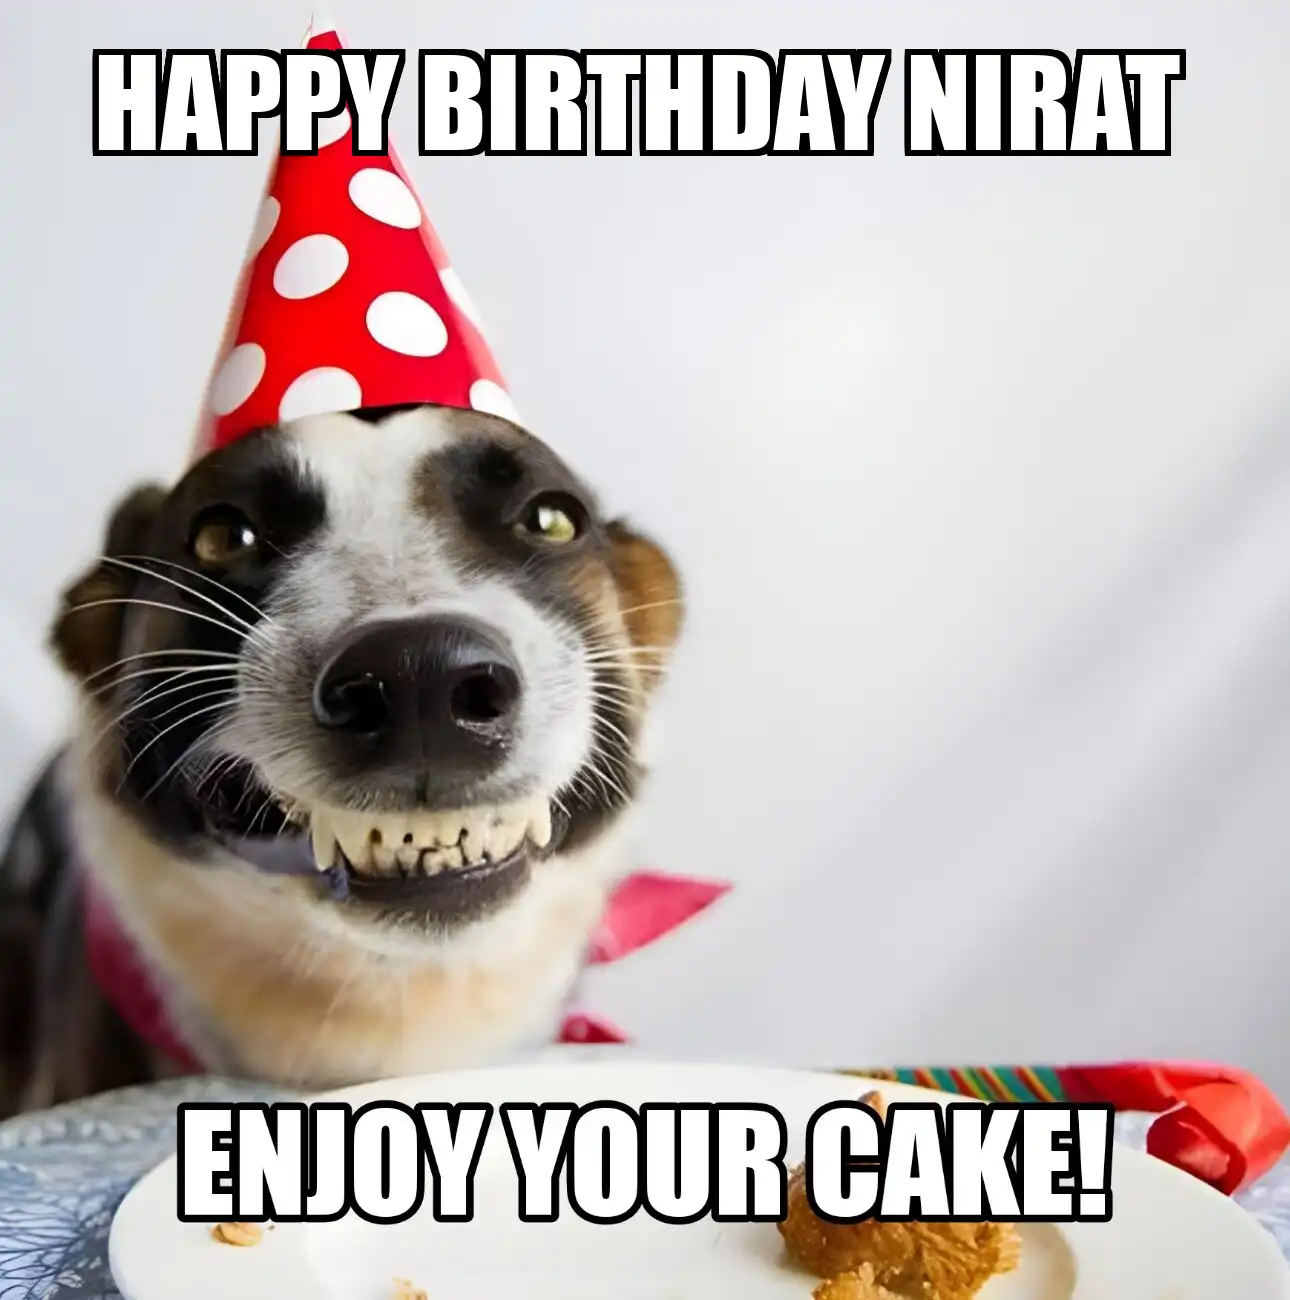 Happy Birthday Nirat Enjoy Your Cake Dog Meme